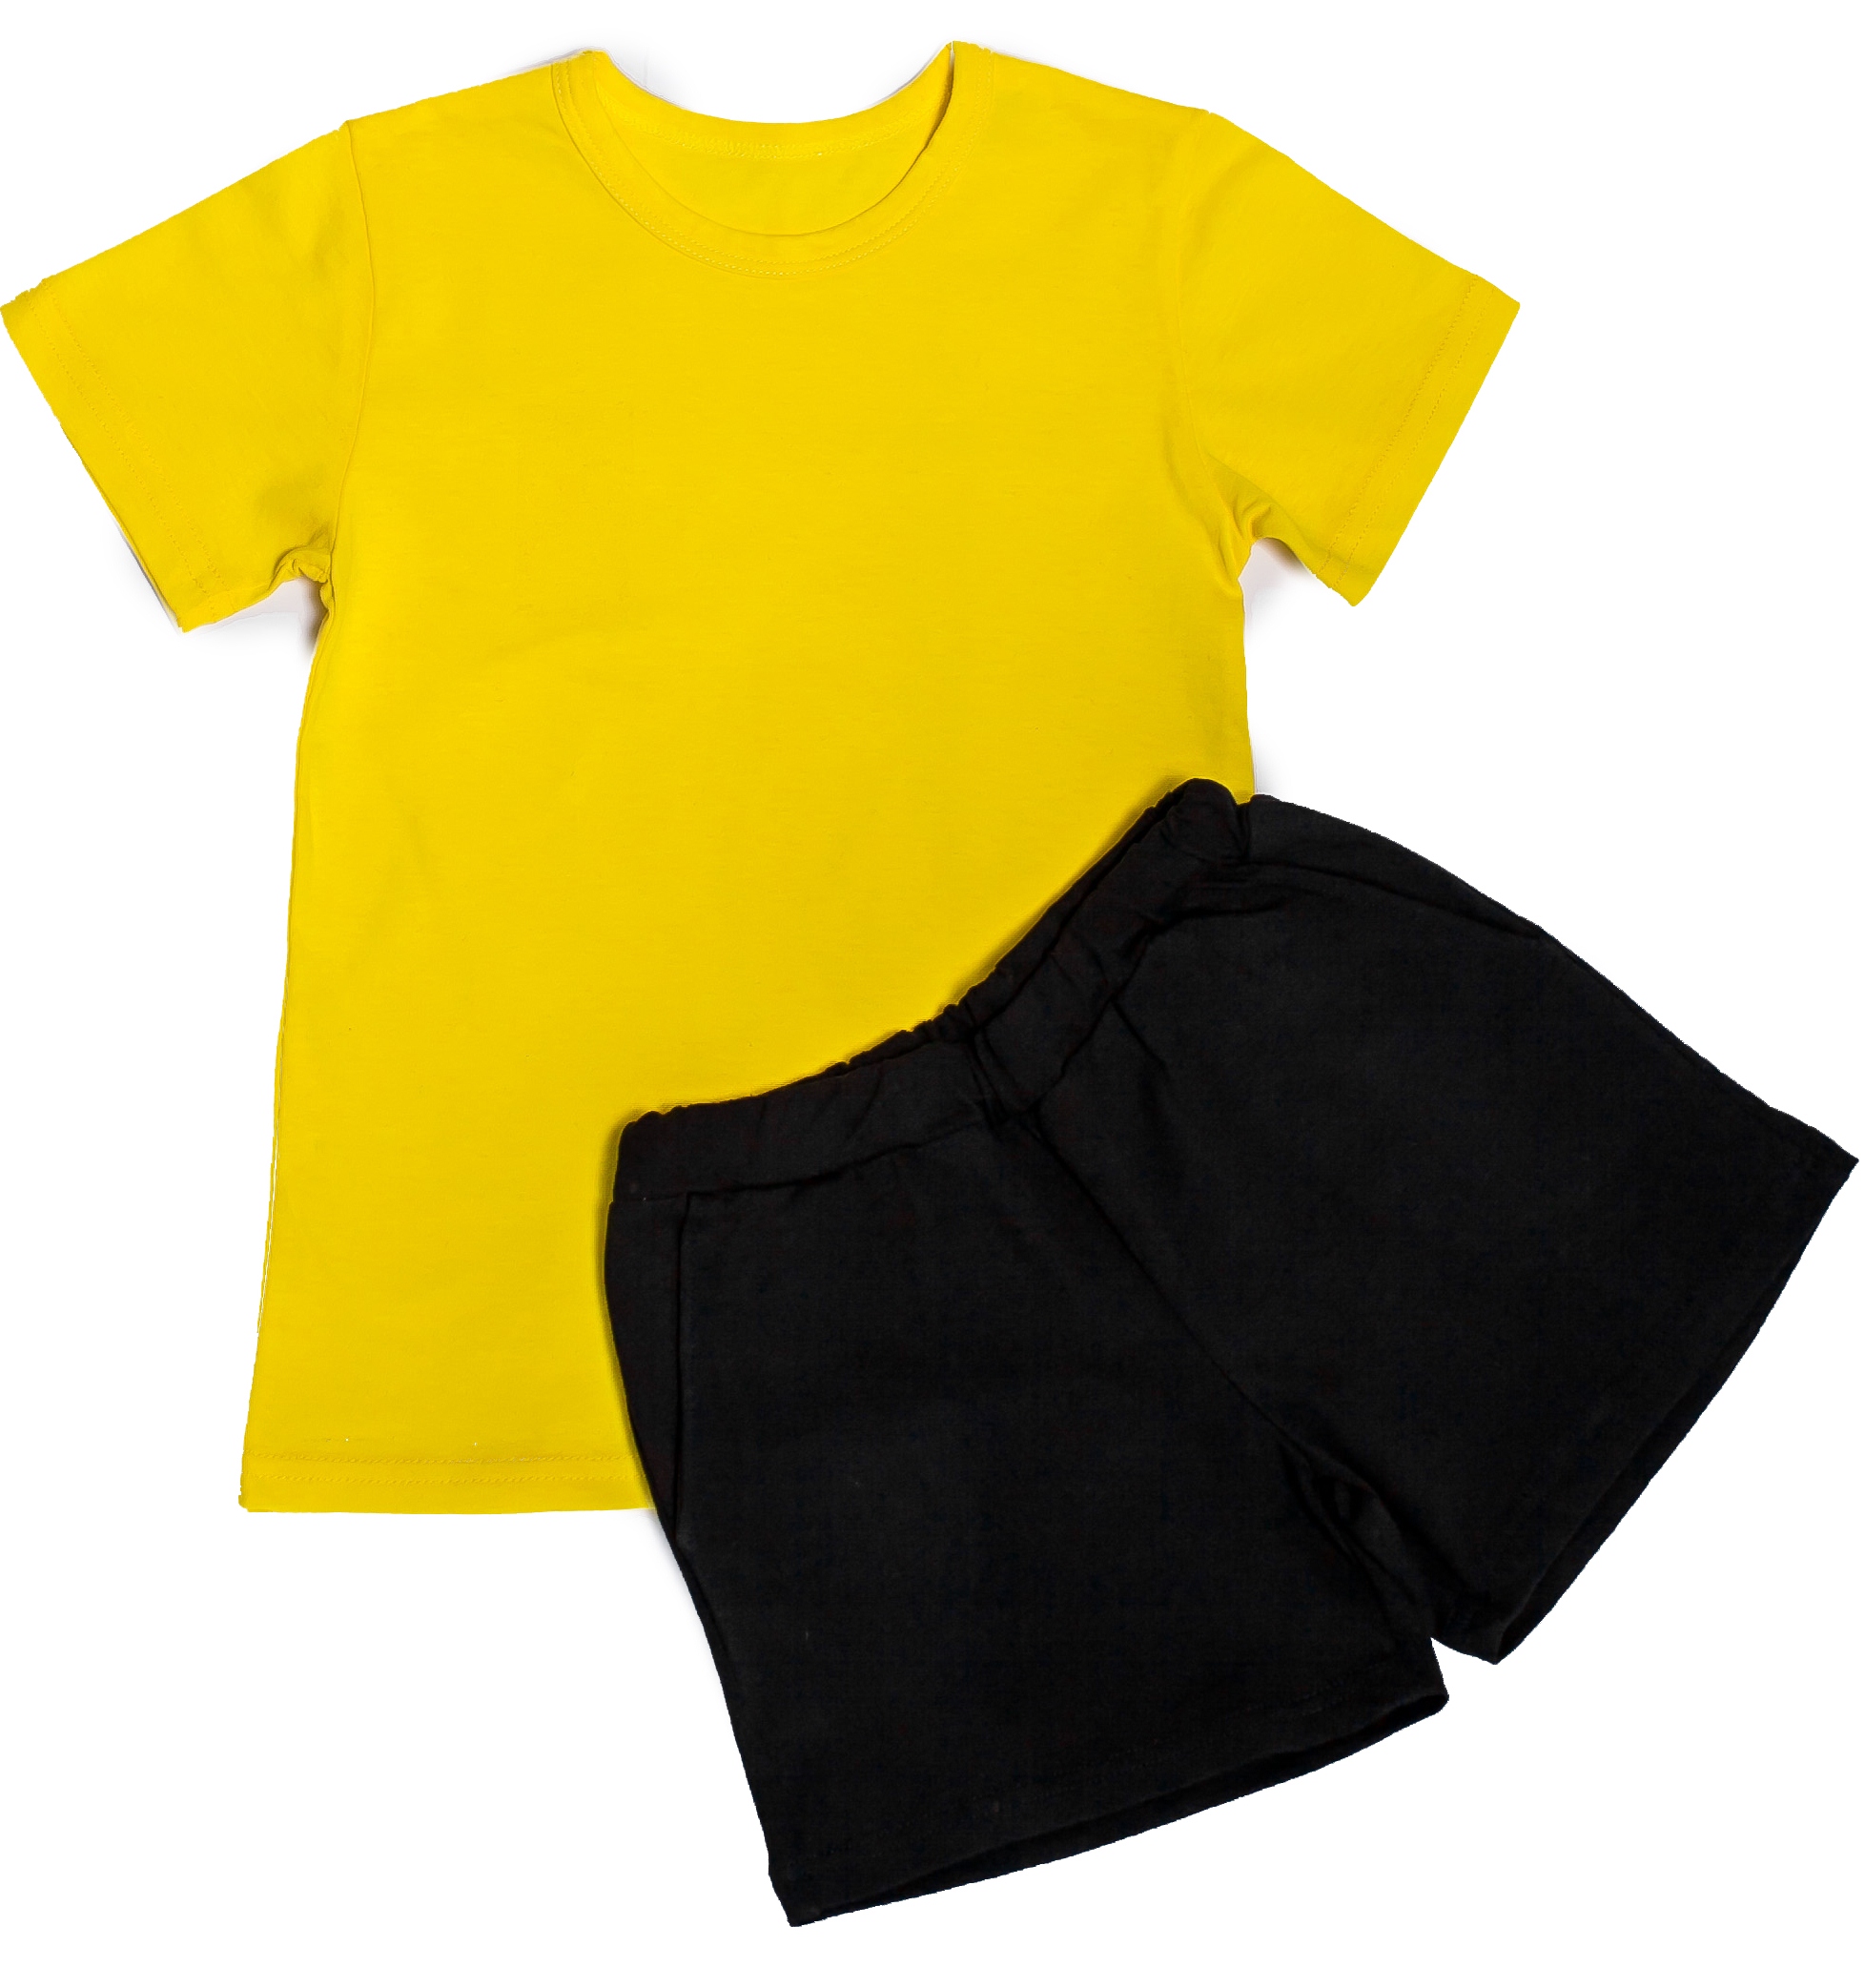 Белая футболка черные шорты. Желтая футболка черные шорты. Черные шорты детские. Футболка и шорты детские желтый. Желтые футболки на физкультуру.